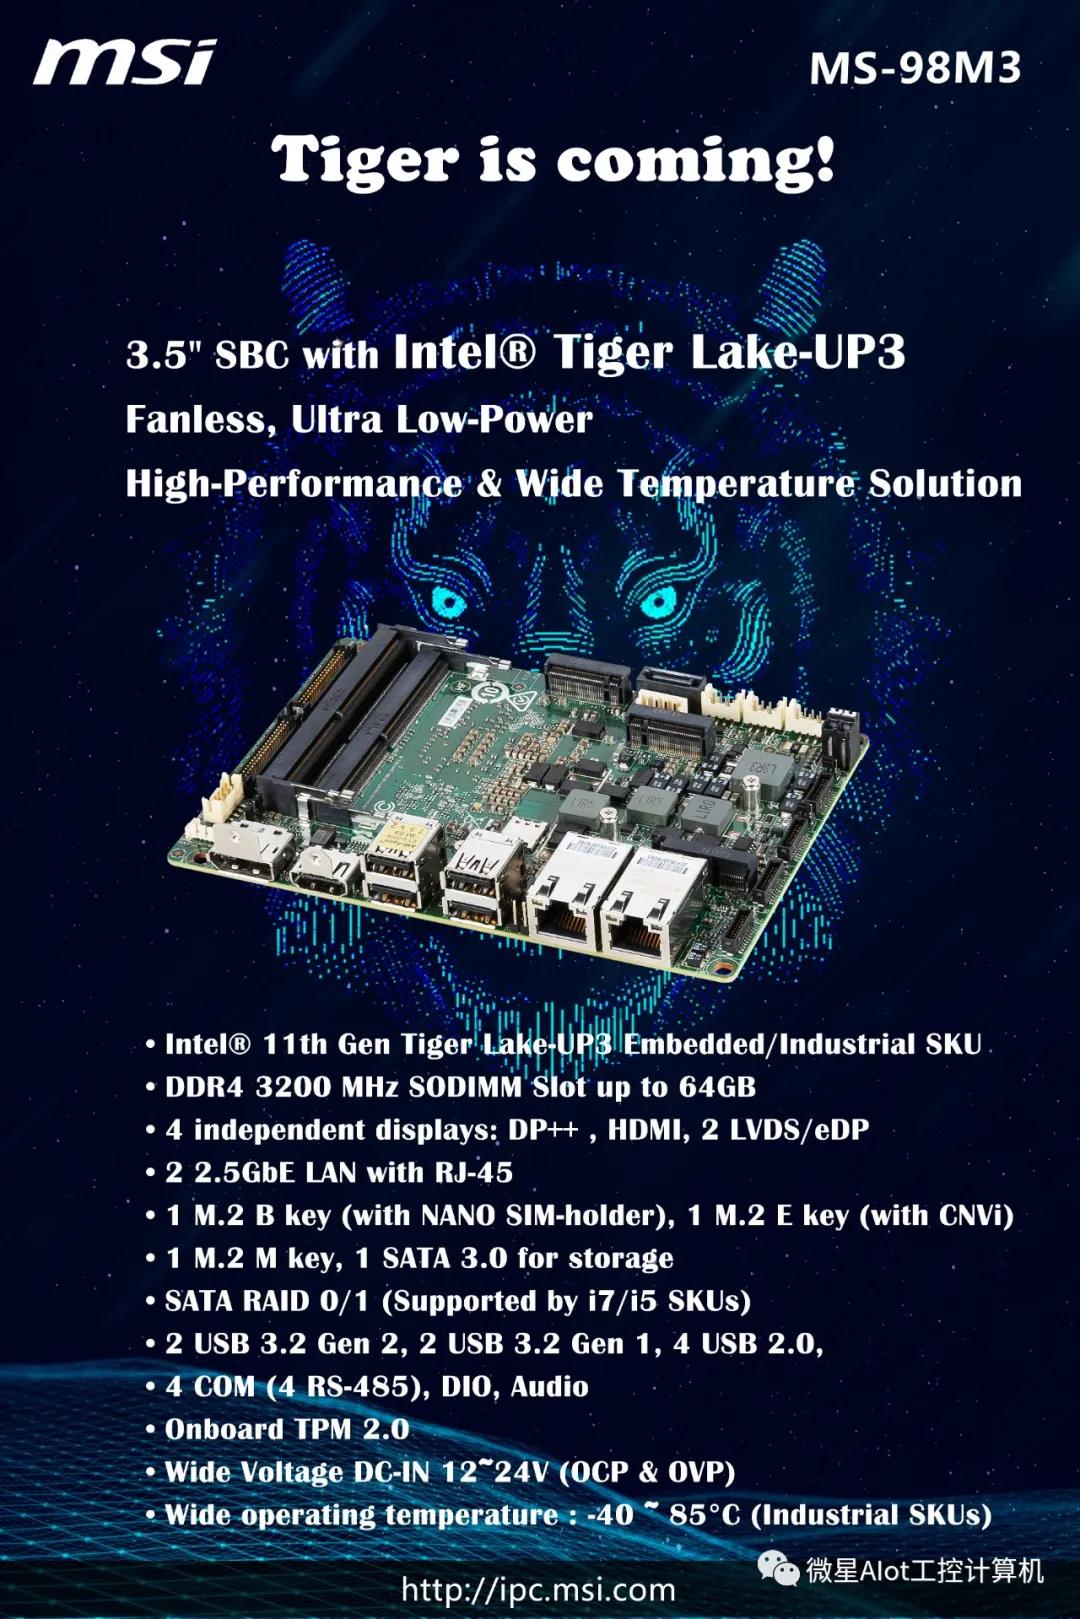 微星AIoT-IPC 基于Intel Tiger Lake-UP3平台的3.5英寸工业主板：MS-98M3，本月正式亮相！